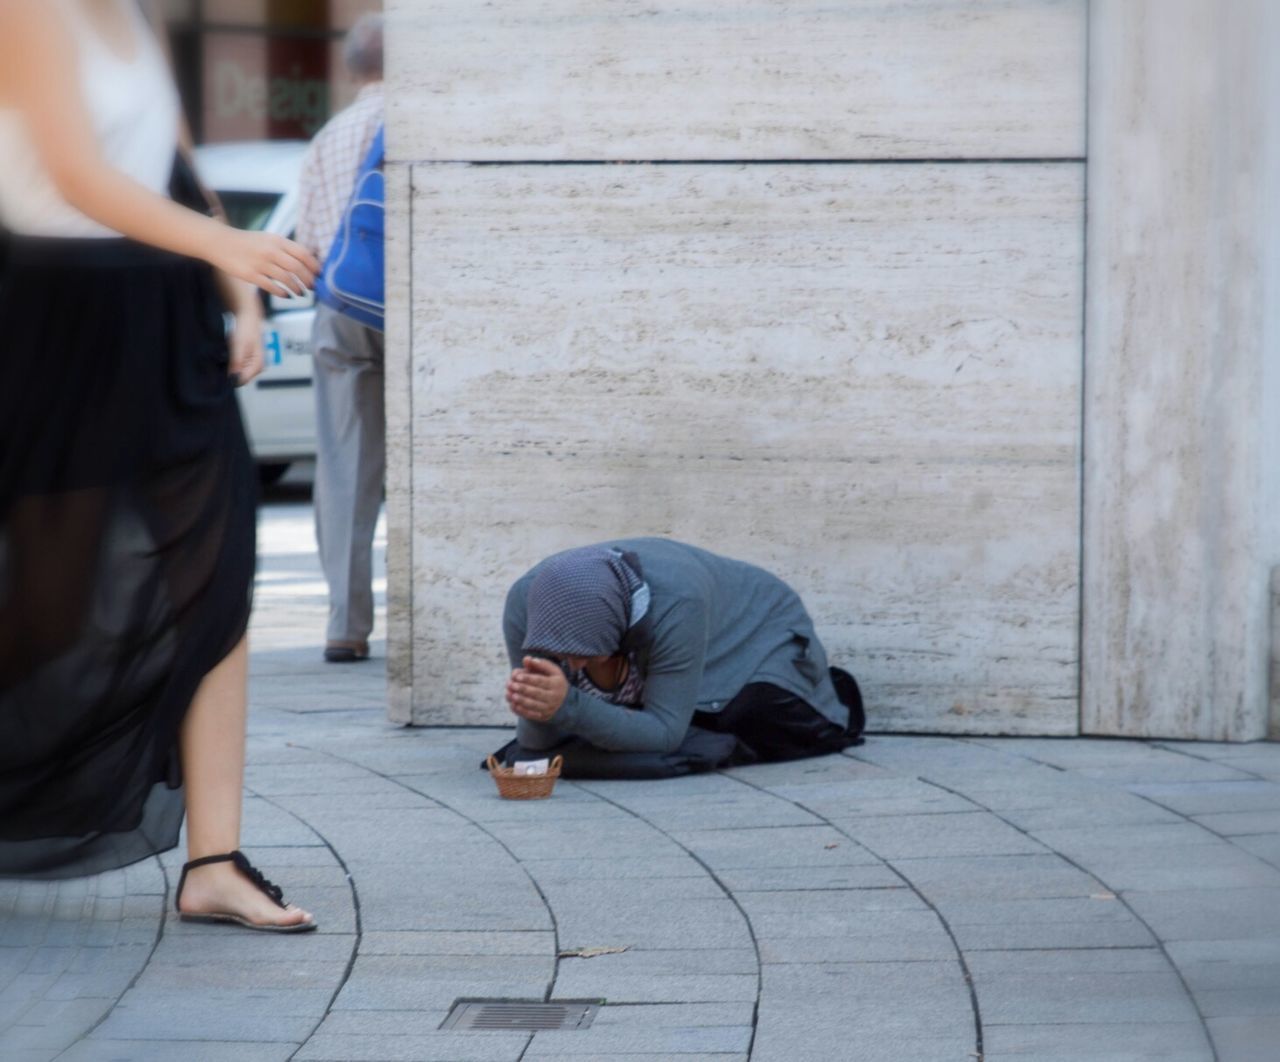 Woman walking by beggar on sidewalk